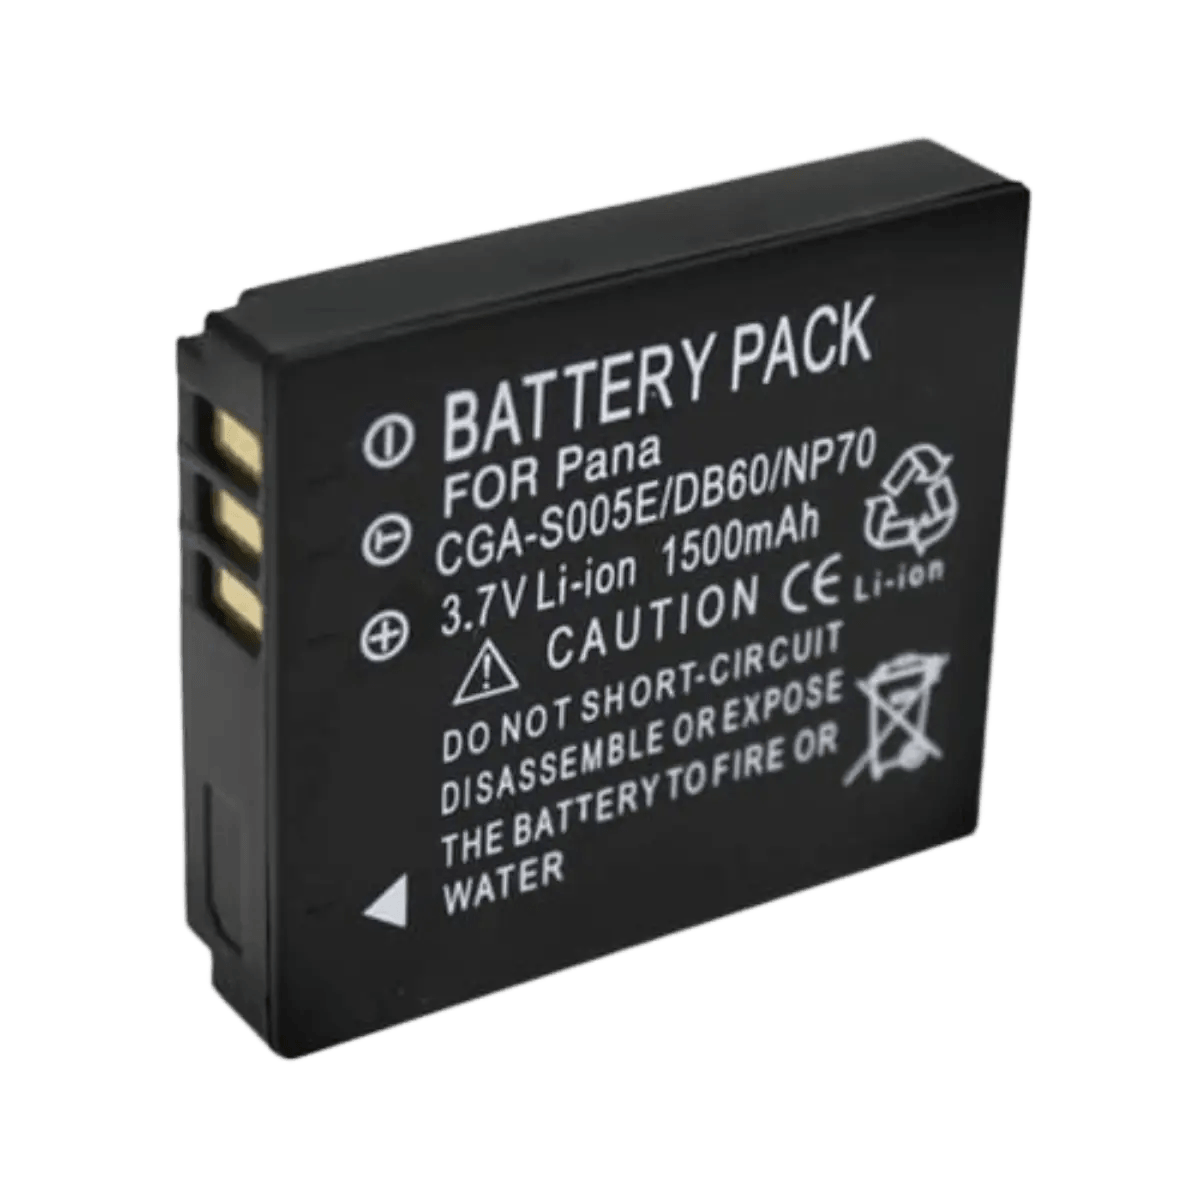 Batterie CGA-S005 pour Appareil Photo Panasonic Dmw-BCC12